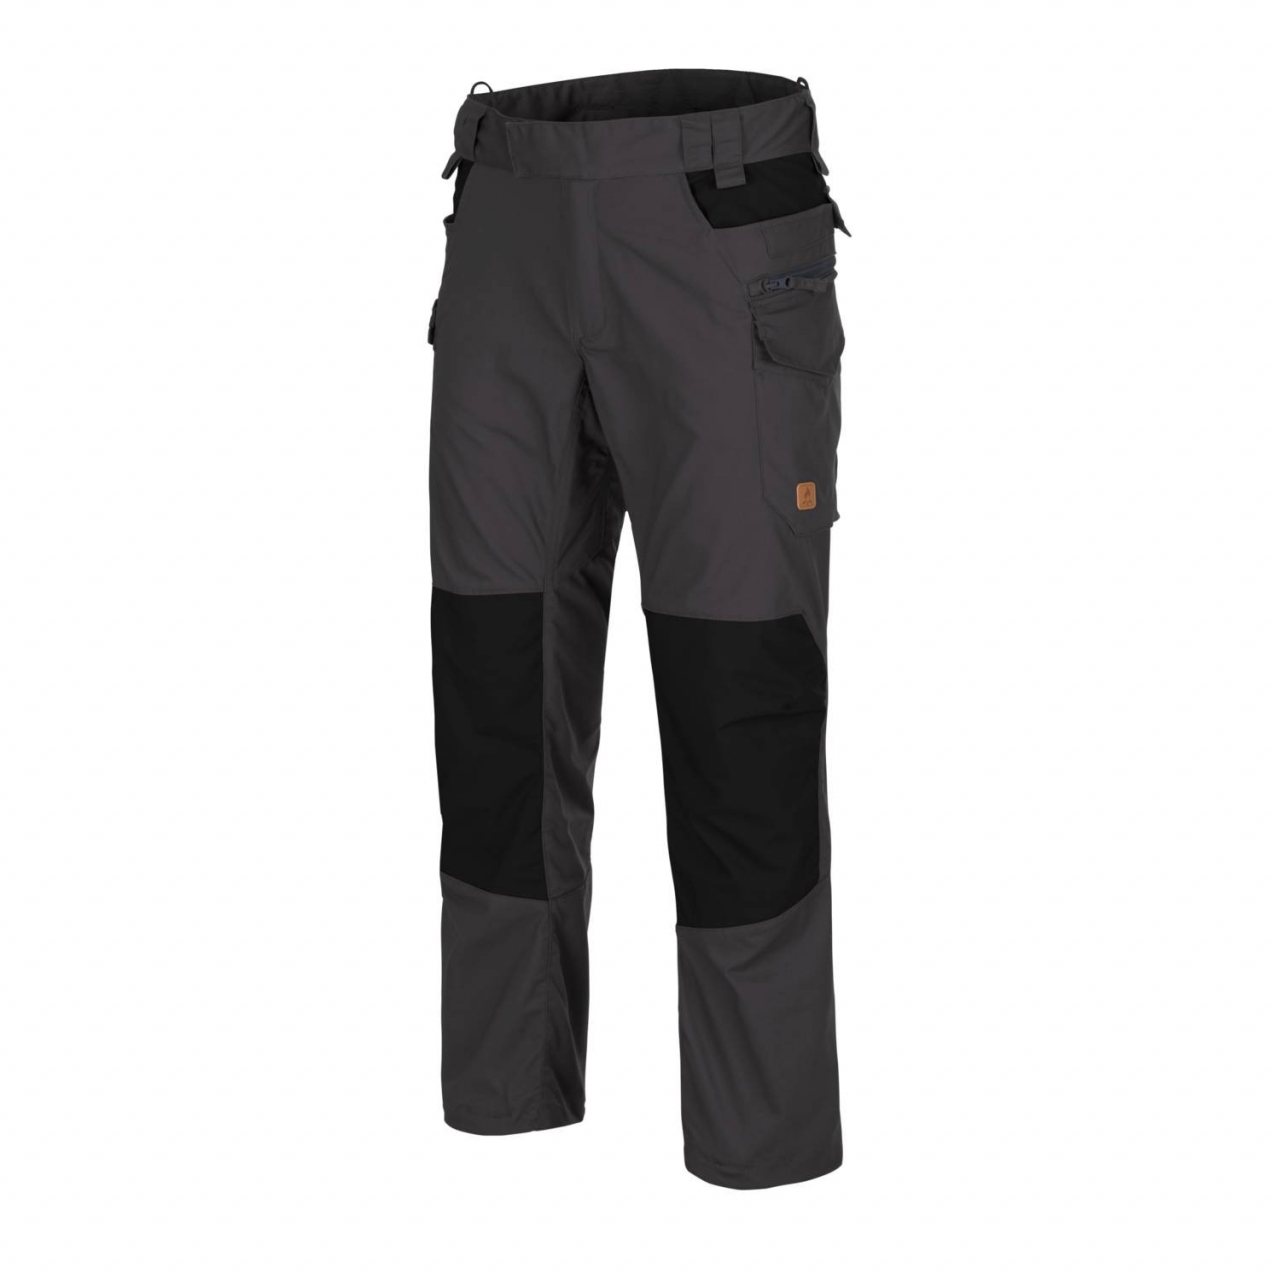 Kalhoty Helikon Pilgrim - šedé-černé, XL